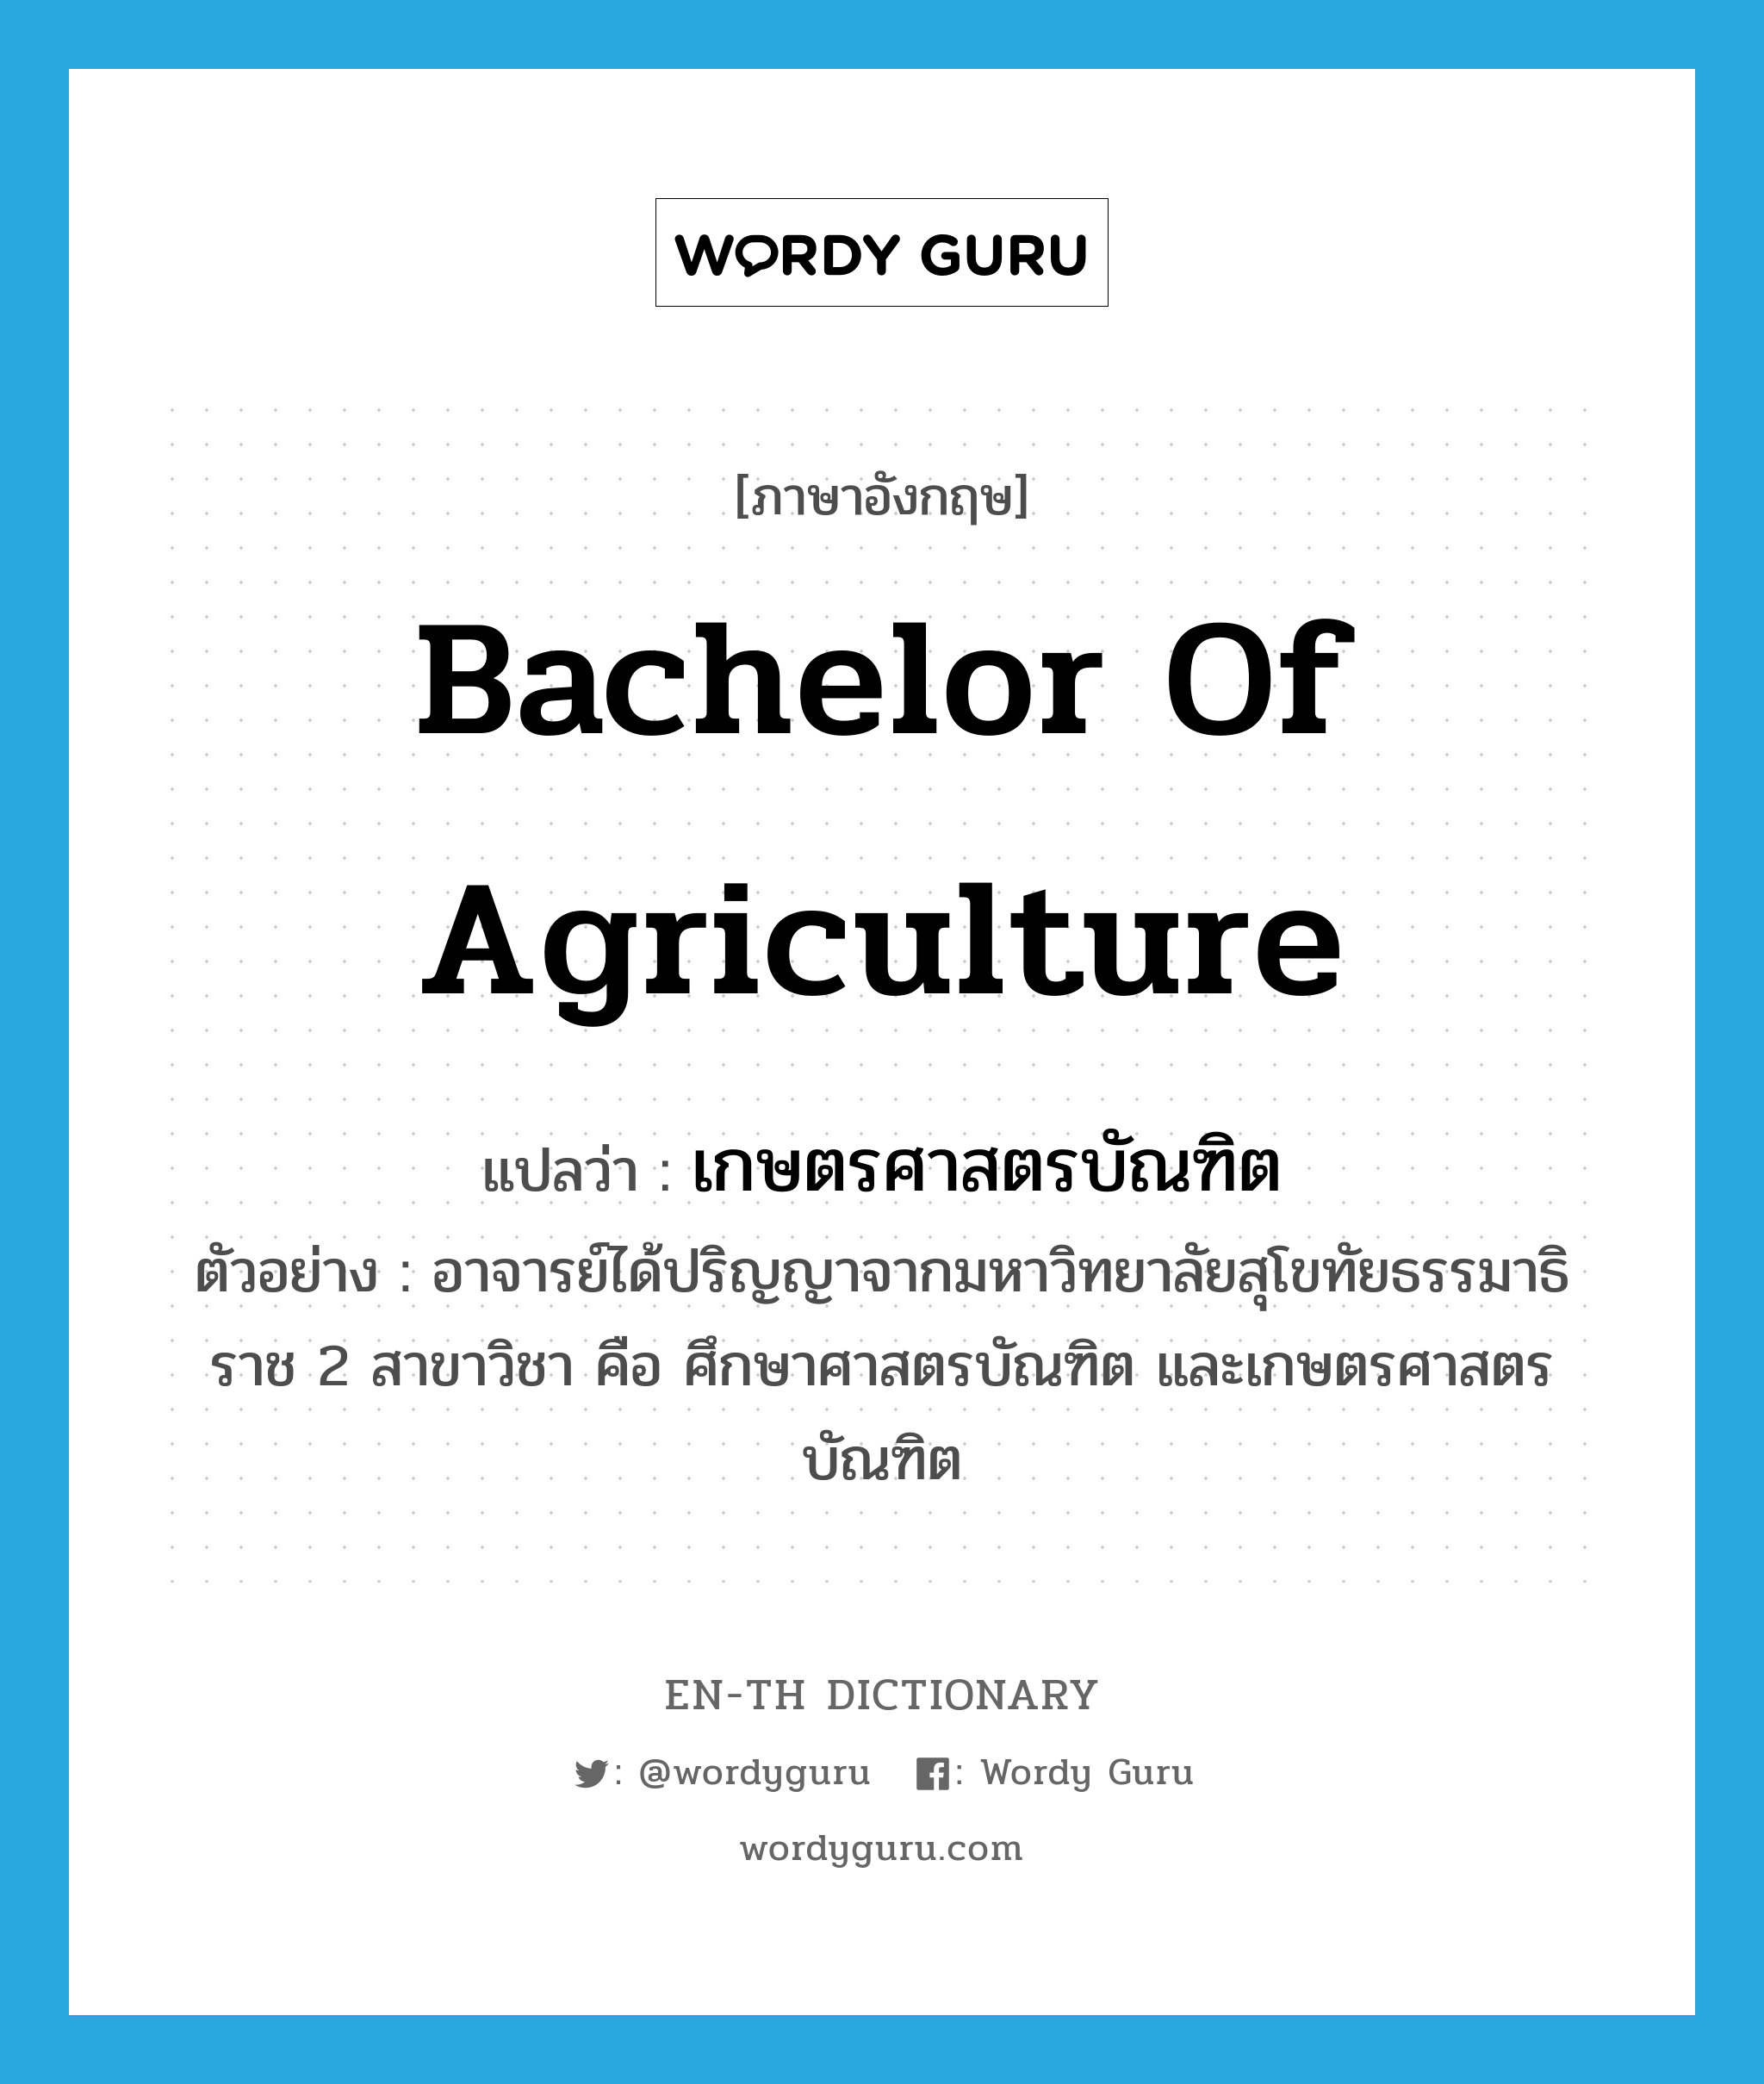 Bachelor of Agriculture แปลว่า?, คำศัพท์ภาษาอังกฤษ Bachelor of Agriculture แปลว่า เกษตรศาสตรบัณฑิต ประเภท N ตัวอย่าง อาจารย์ได้ปริญญาจากมหาวิทยาลัยสุโขทัยธรรมาธิราช 2 สาขาวิชา คือ ศึกษาศาสตรบัณฑิต และเกษตรศาสตรบัณฑิต หมวด N